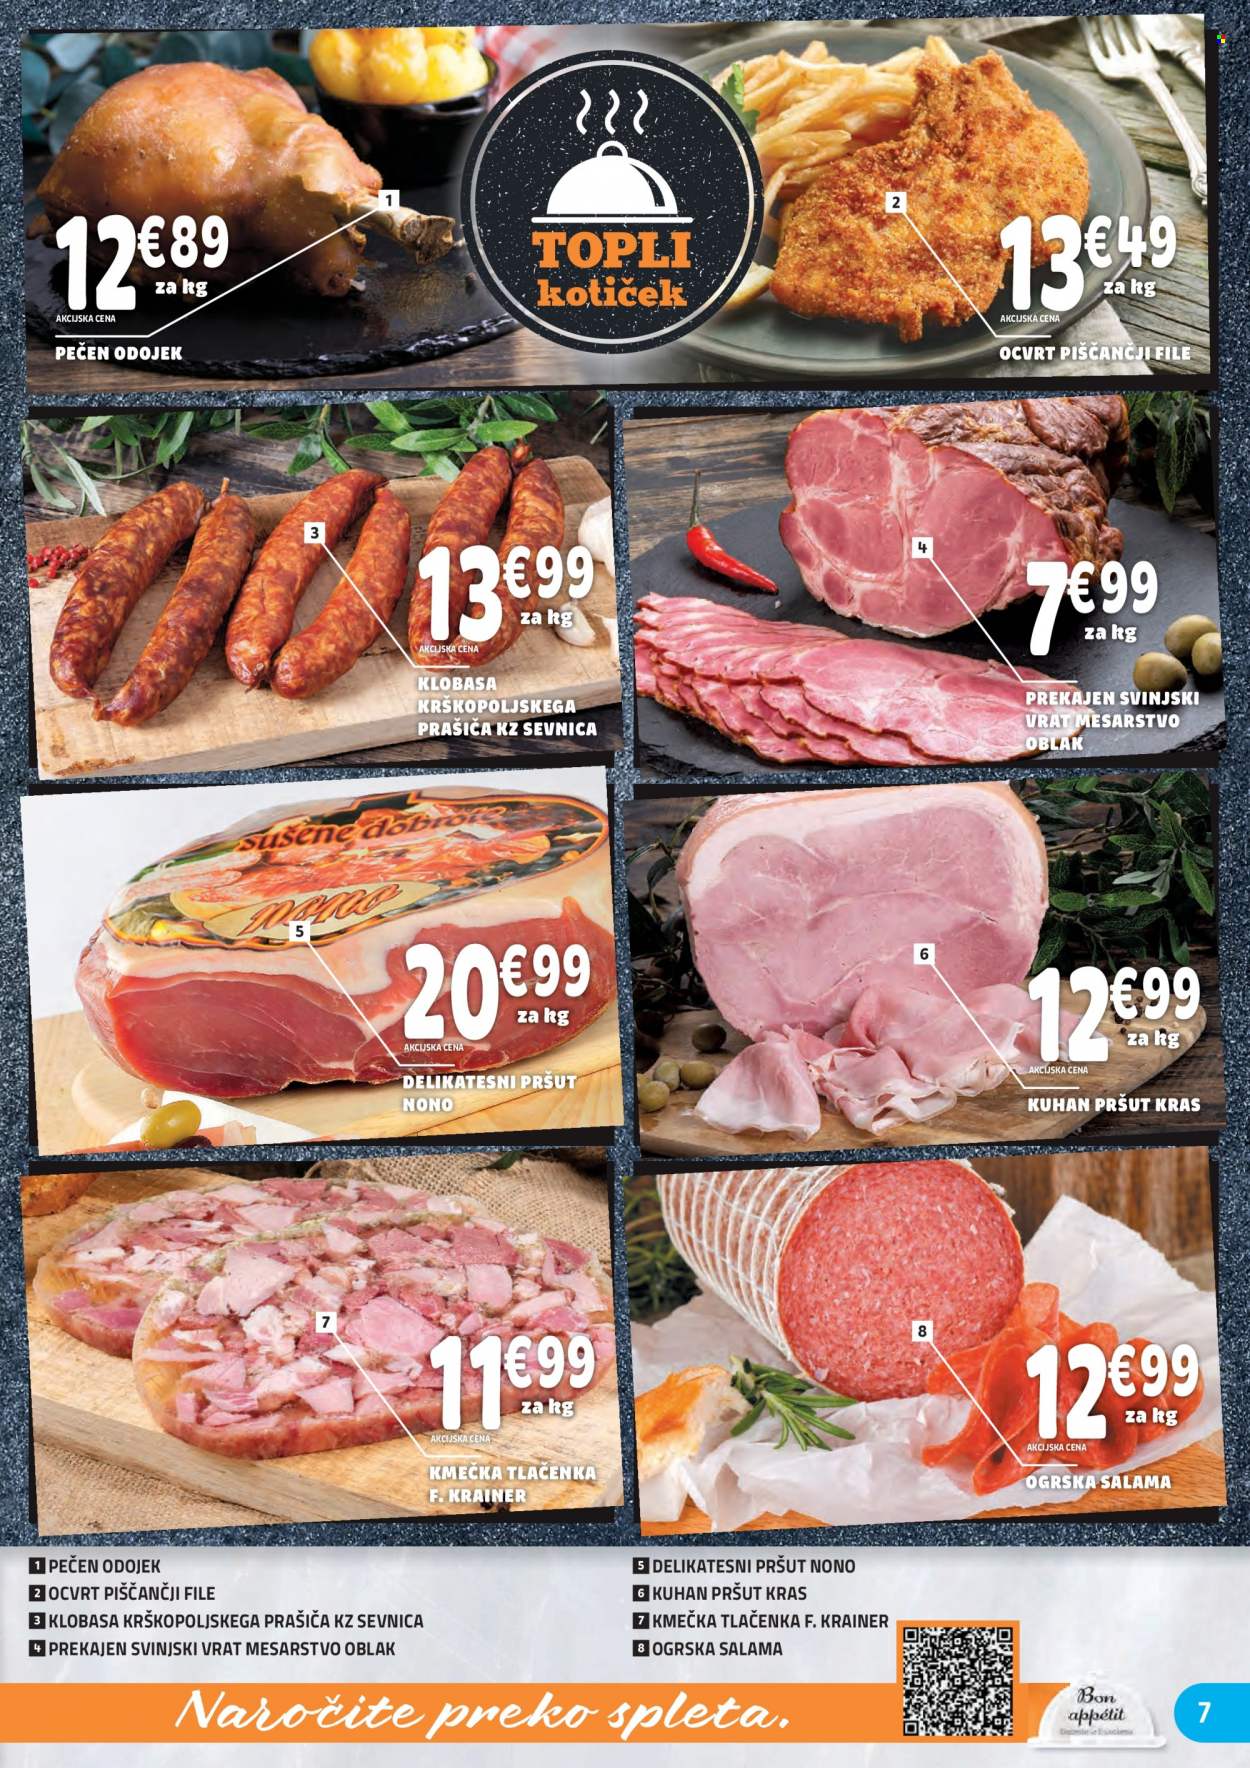 thumbnail - E.Leclerc katalog - 29.9.2021 - 9.10.2021 - Ponudba izdelkov - piščančji file, piščančje meso, svinjski vrat, svinjsko meso, klobasa, kuhan pršut, ogrska salama, pršut, salama, tlačenka. Stran 7.